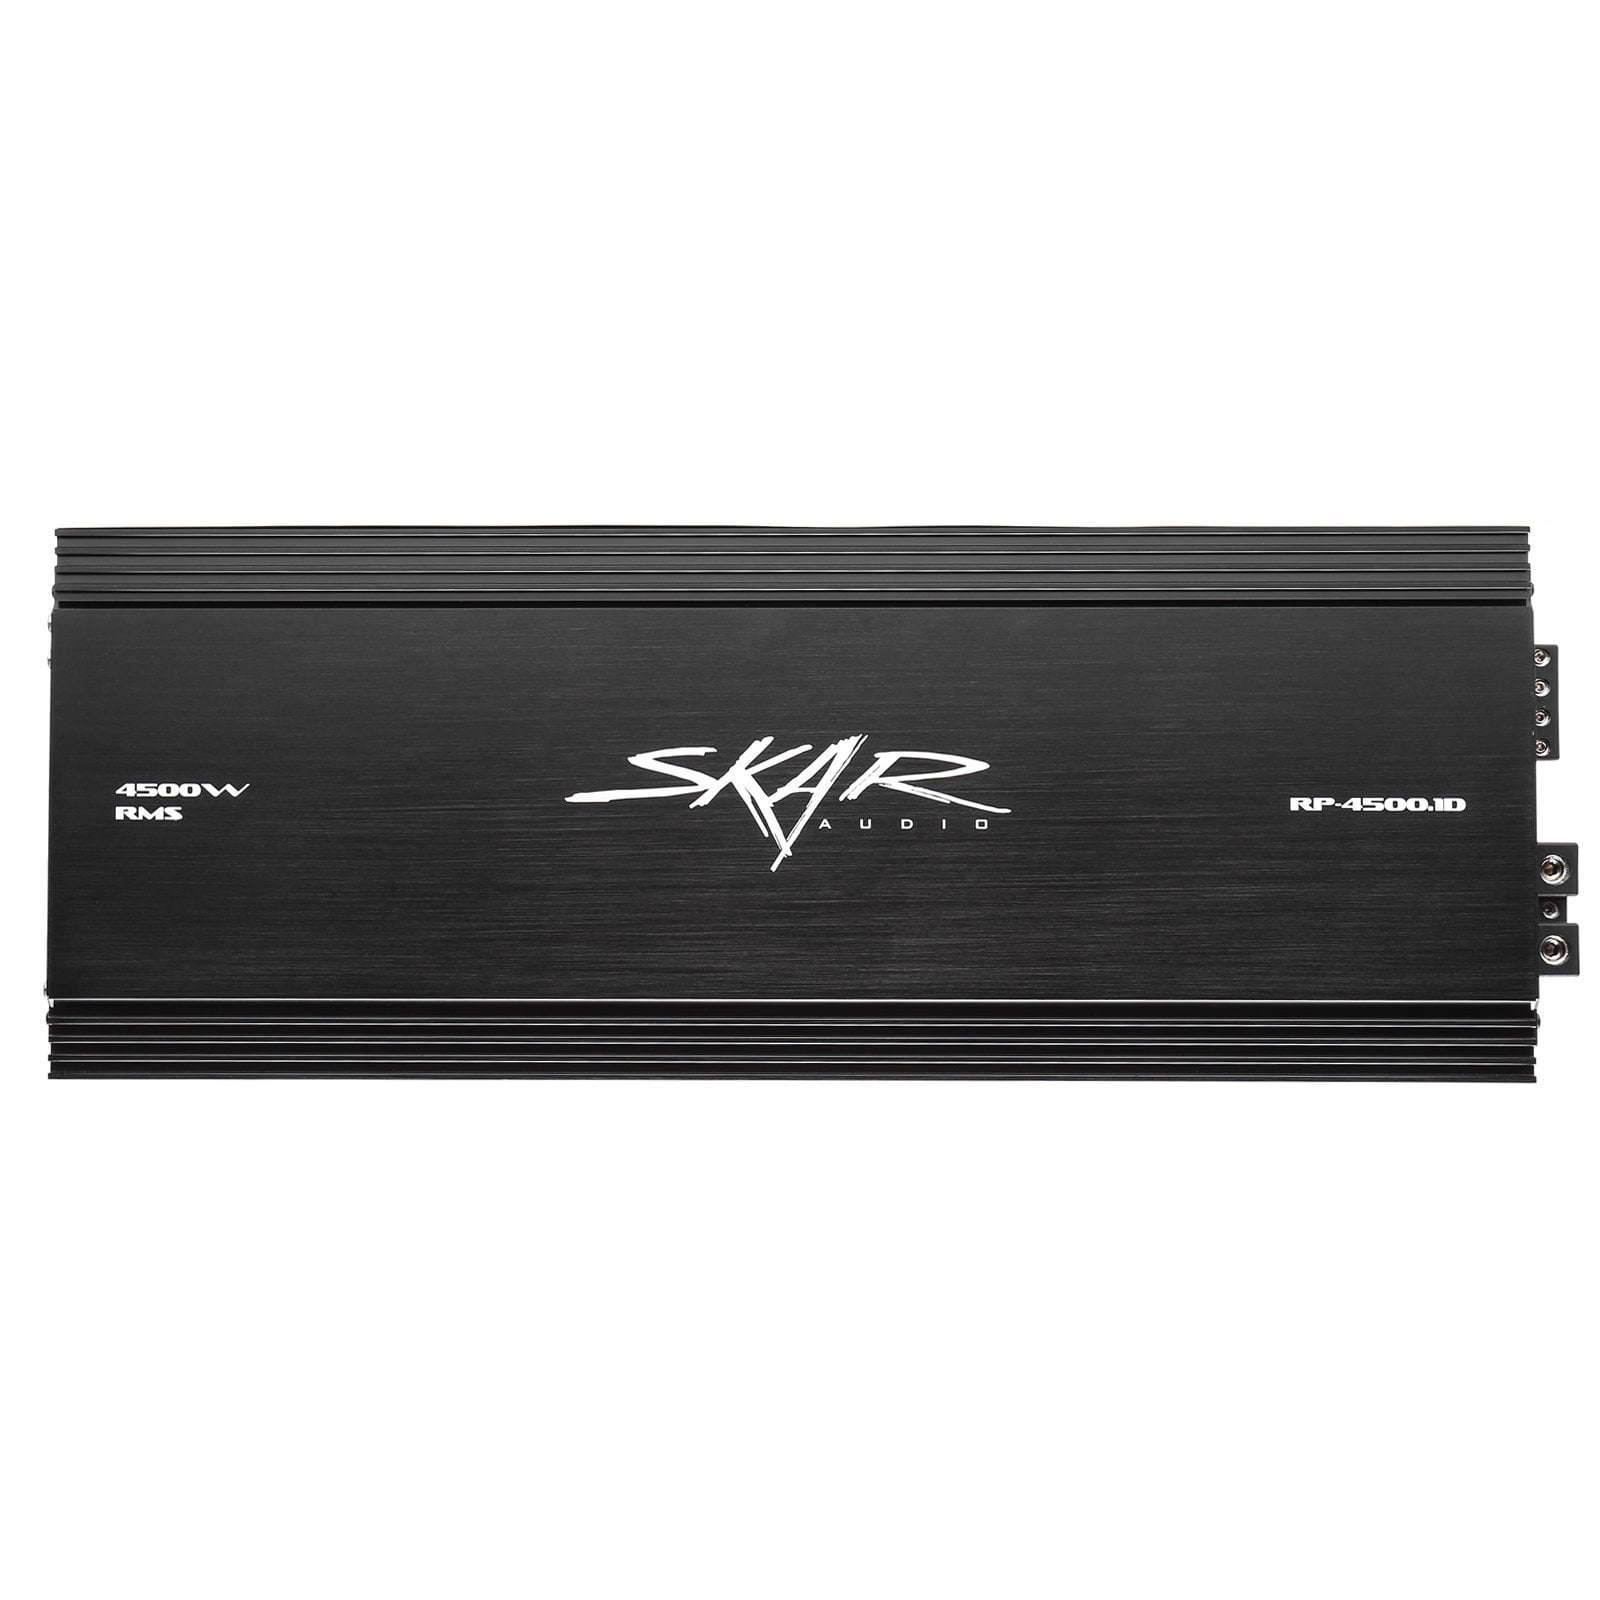 Skar Audio RP-4500.1D 4,500 Watt Class D Monoblock Car Amplifier - Front View